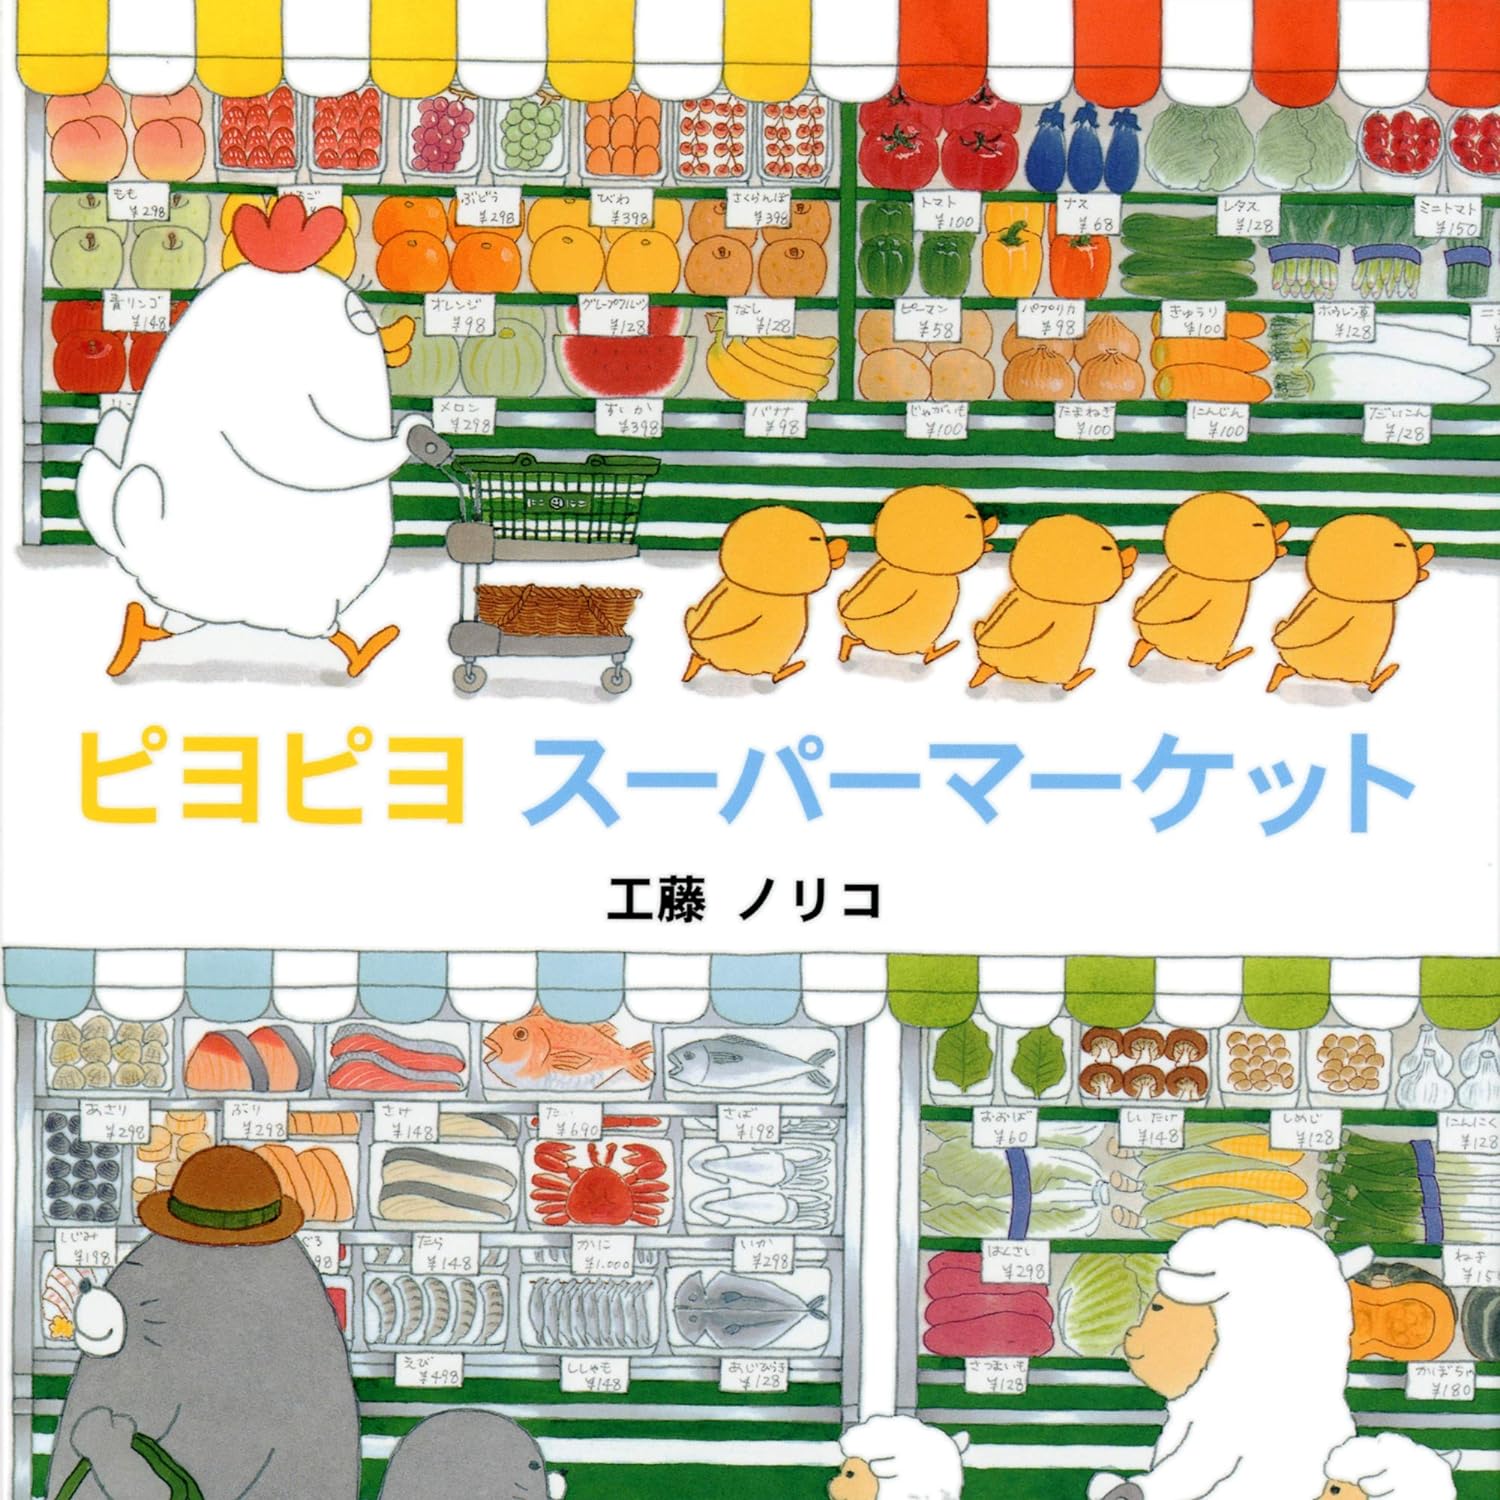 『ピヨピヨ スーパーマーケット』